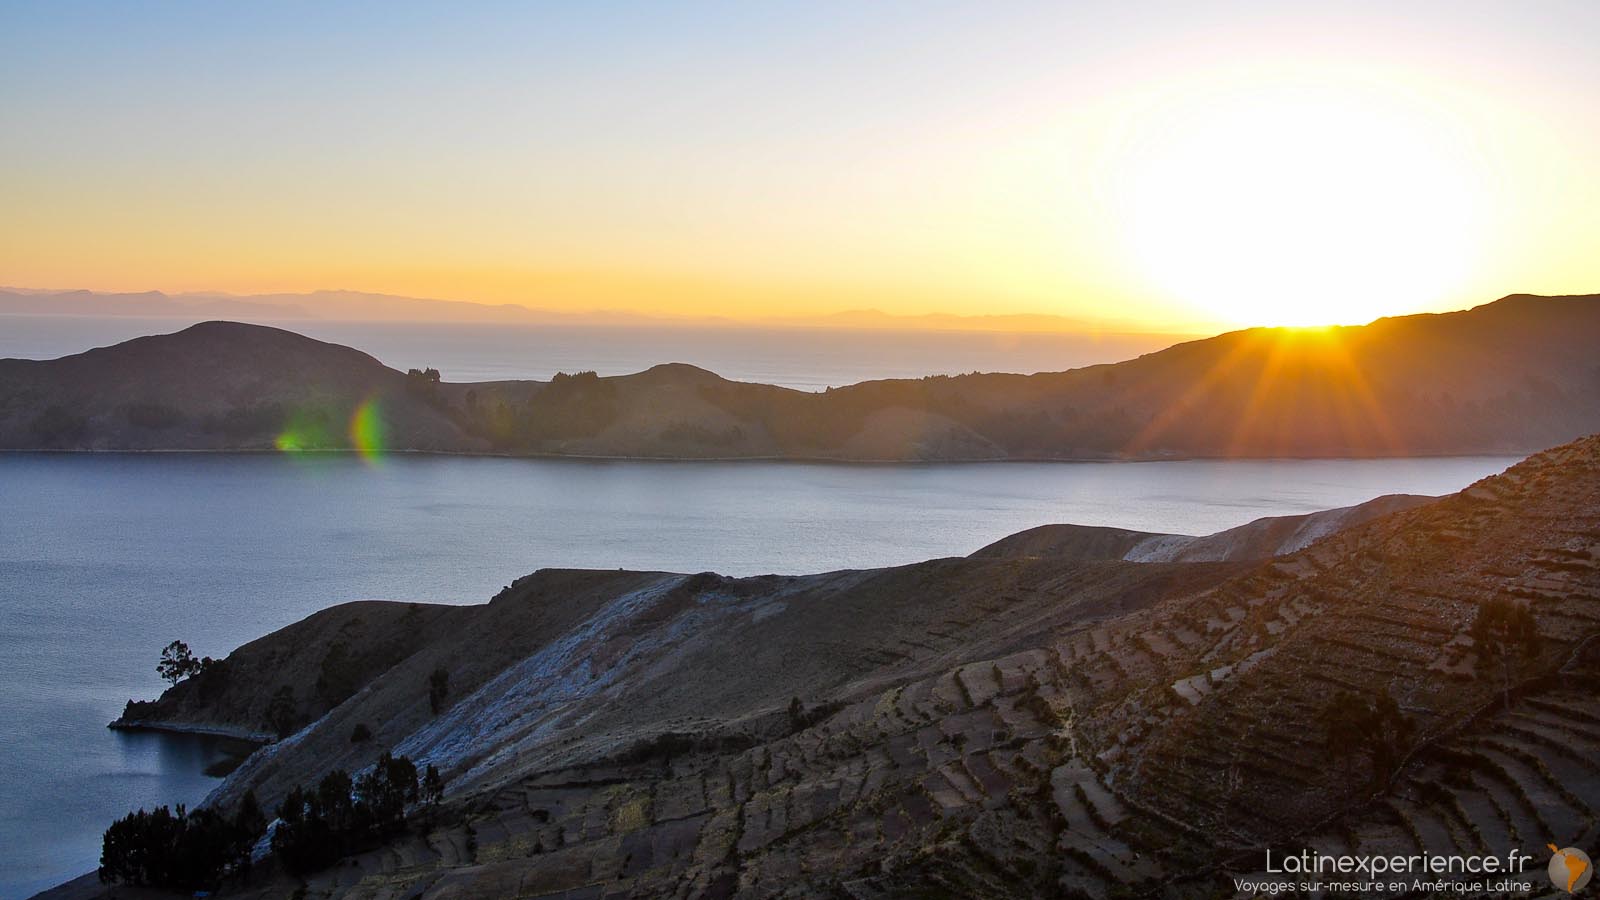 Amérique du Sud - Bolivie - Lac Titicaca - couché de soleil - Latinexperience voyages